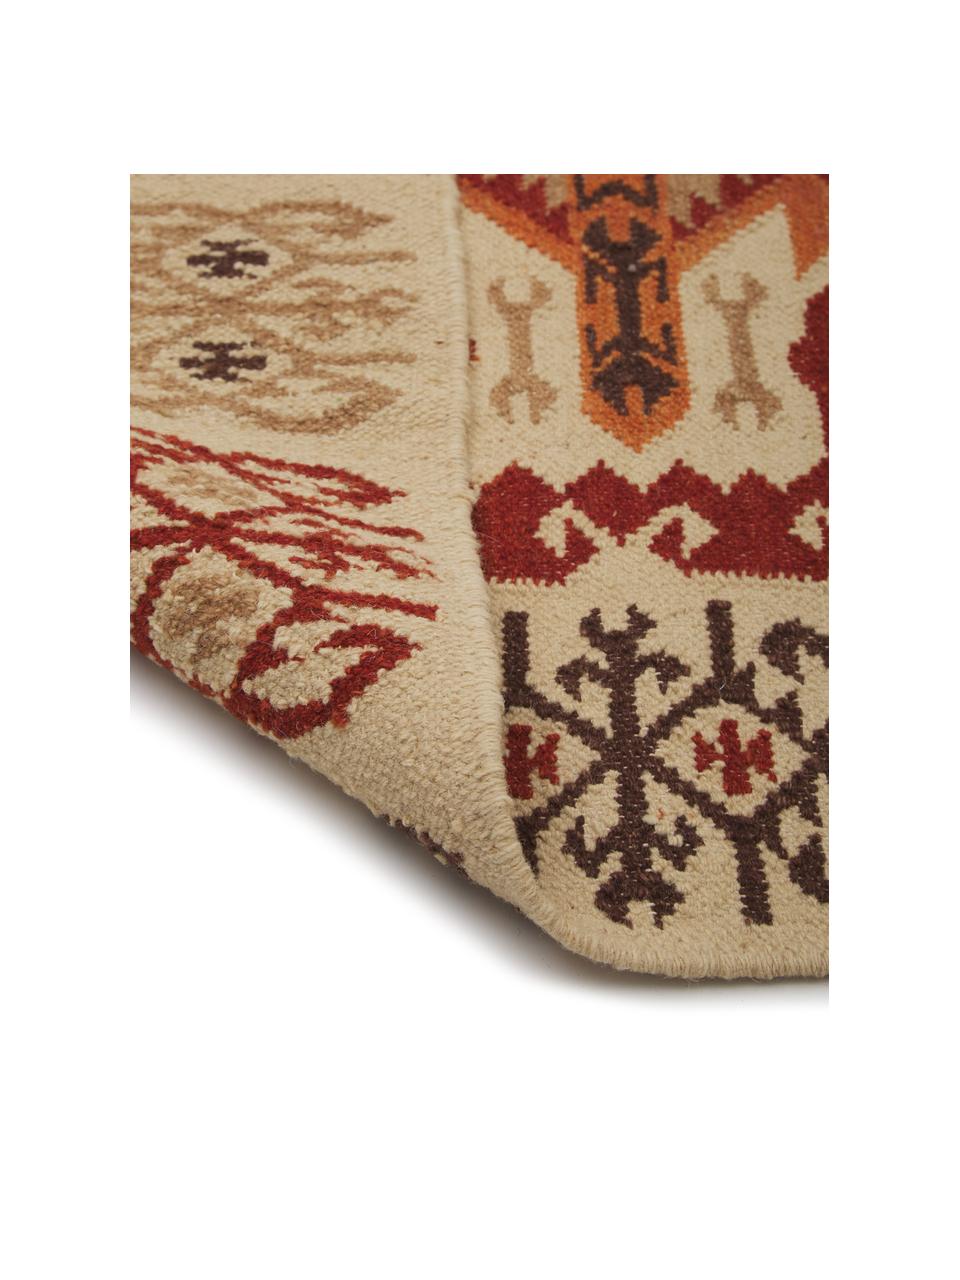 Alfombra artesanal de lana Kilim, 100% lana

Las alfombras de lana se pueden aflojar durante las primeras semanas de uso, la pelusa se reduce con el uso diario, Rojo, beige, naranja, marrón, An 155 x L 240 cm (Tamaño M)